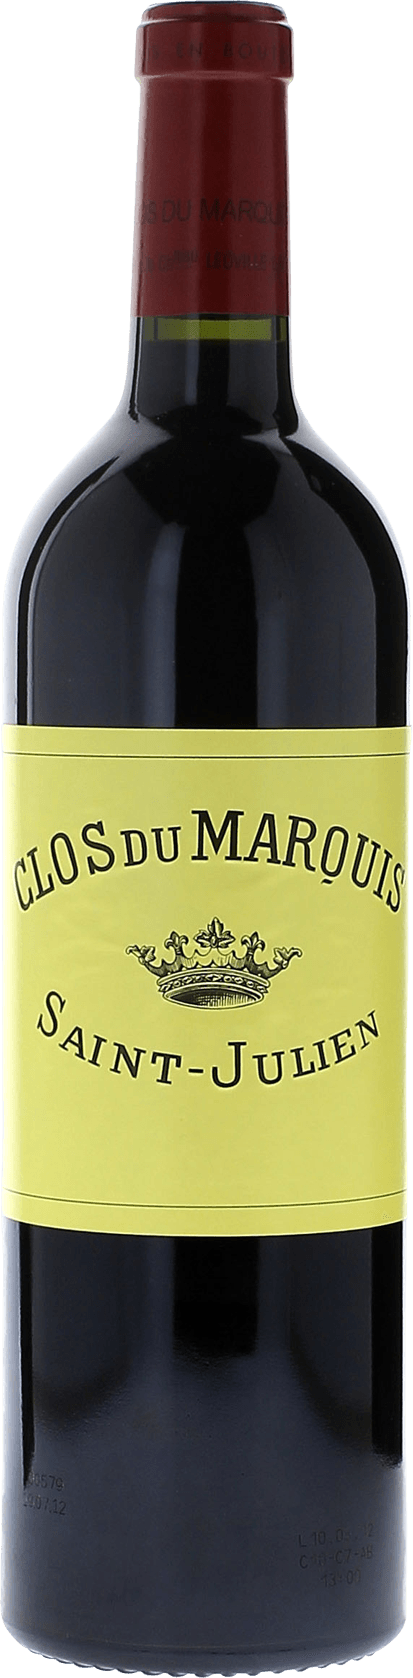 Clos du marquis 2015 2me vin de LEOVILLE LAS CASES Saint-Julien, Bordeaux rouge